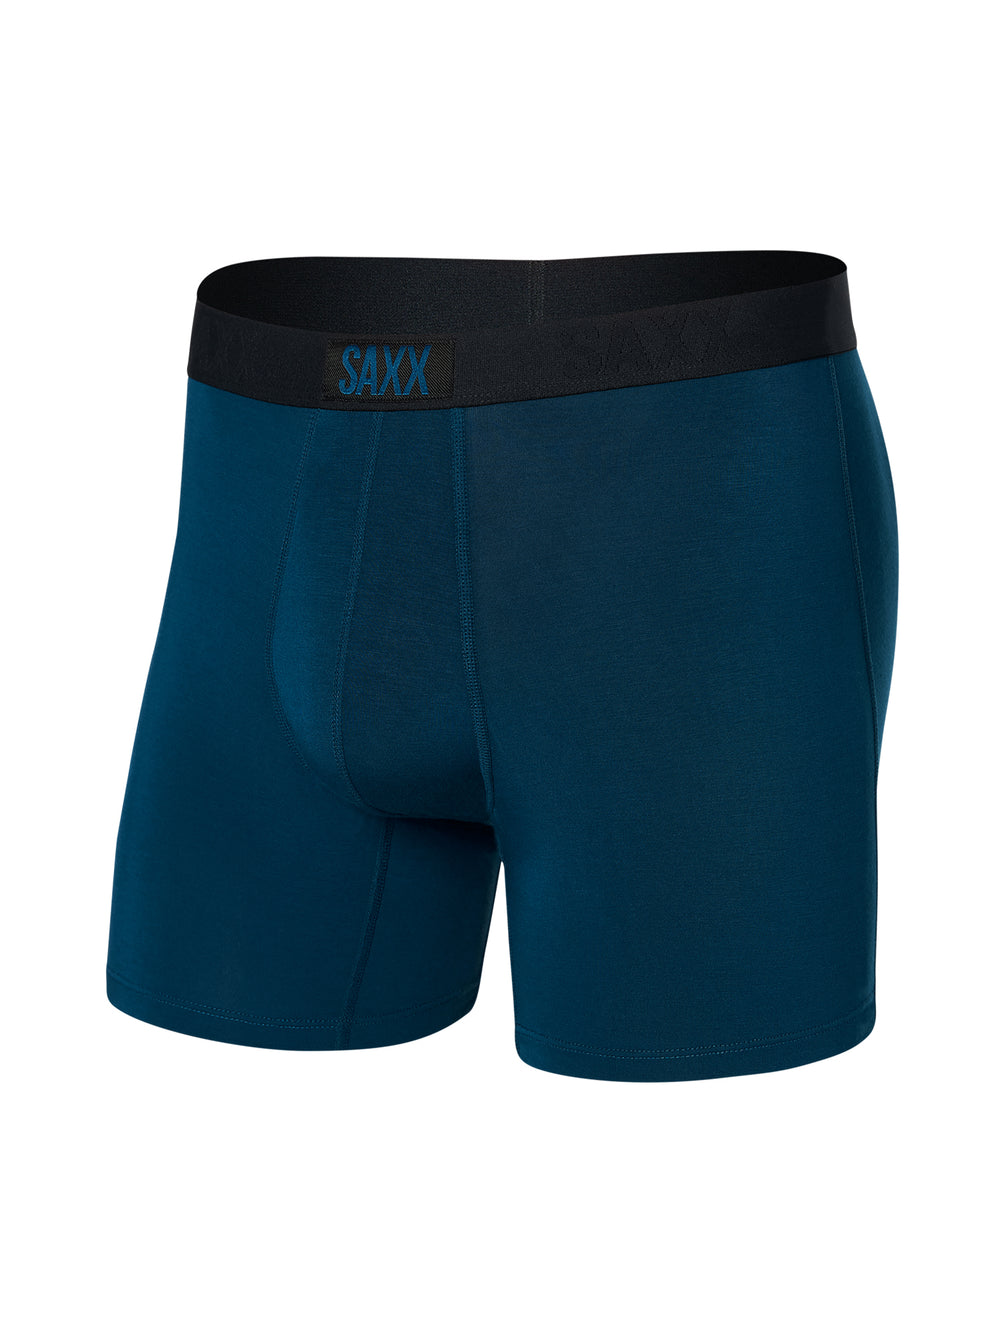 SAXX Underwear Non-Stop Stretch Cotton Slim-Fit Boxer Briefs